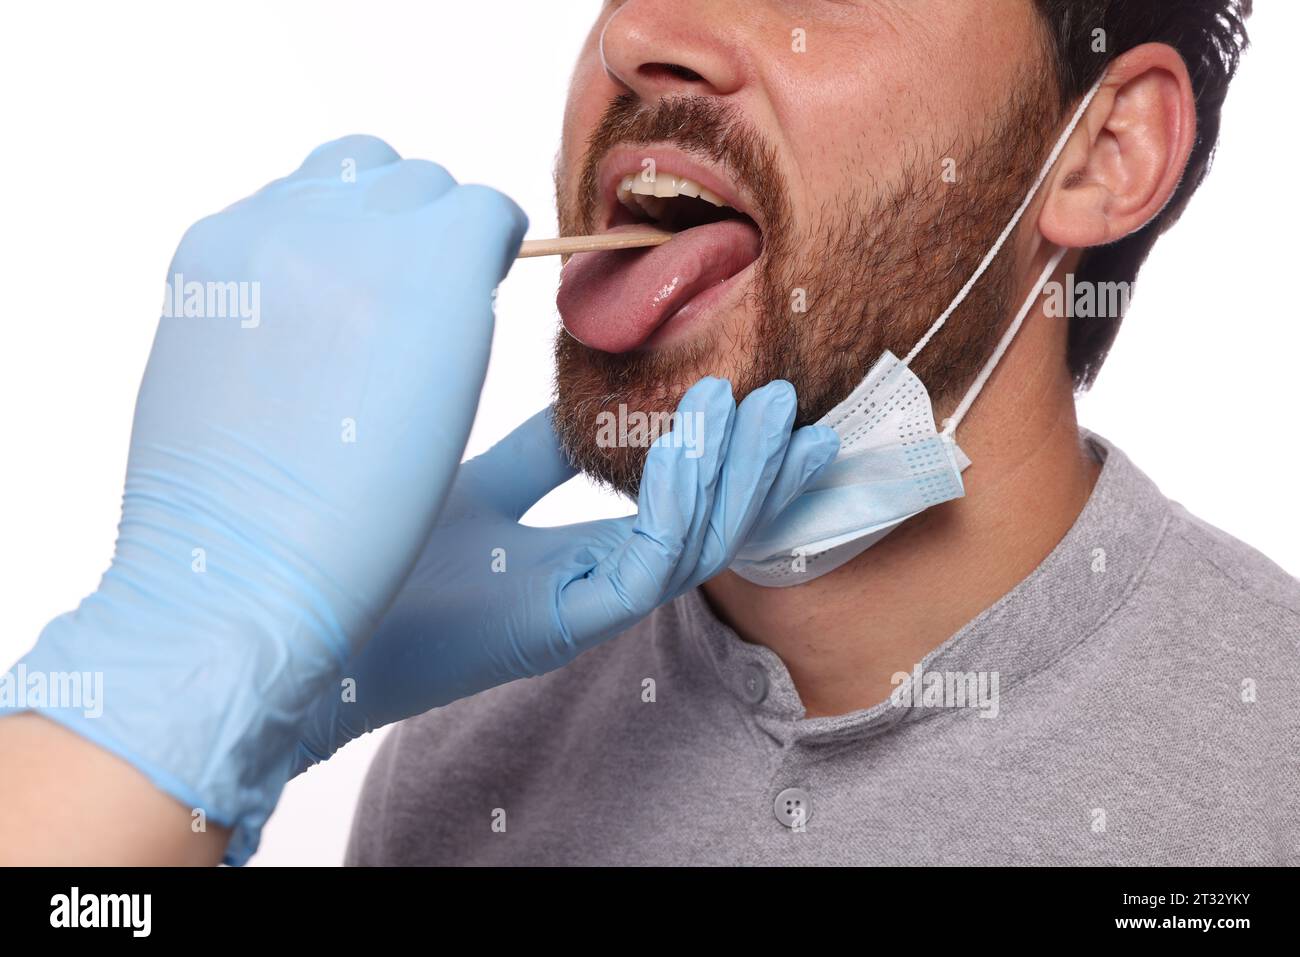 Arzt untersucht die Mundhöhle des Mannes mit Zungendepressor auf weißem Hintergrund, Nahaufnahme Stockfoto